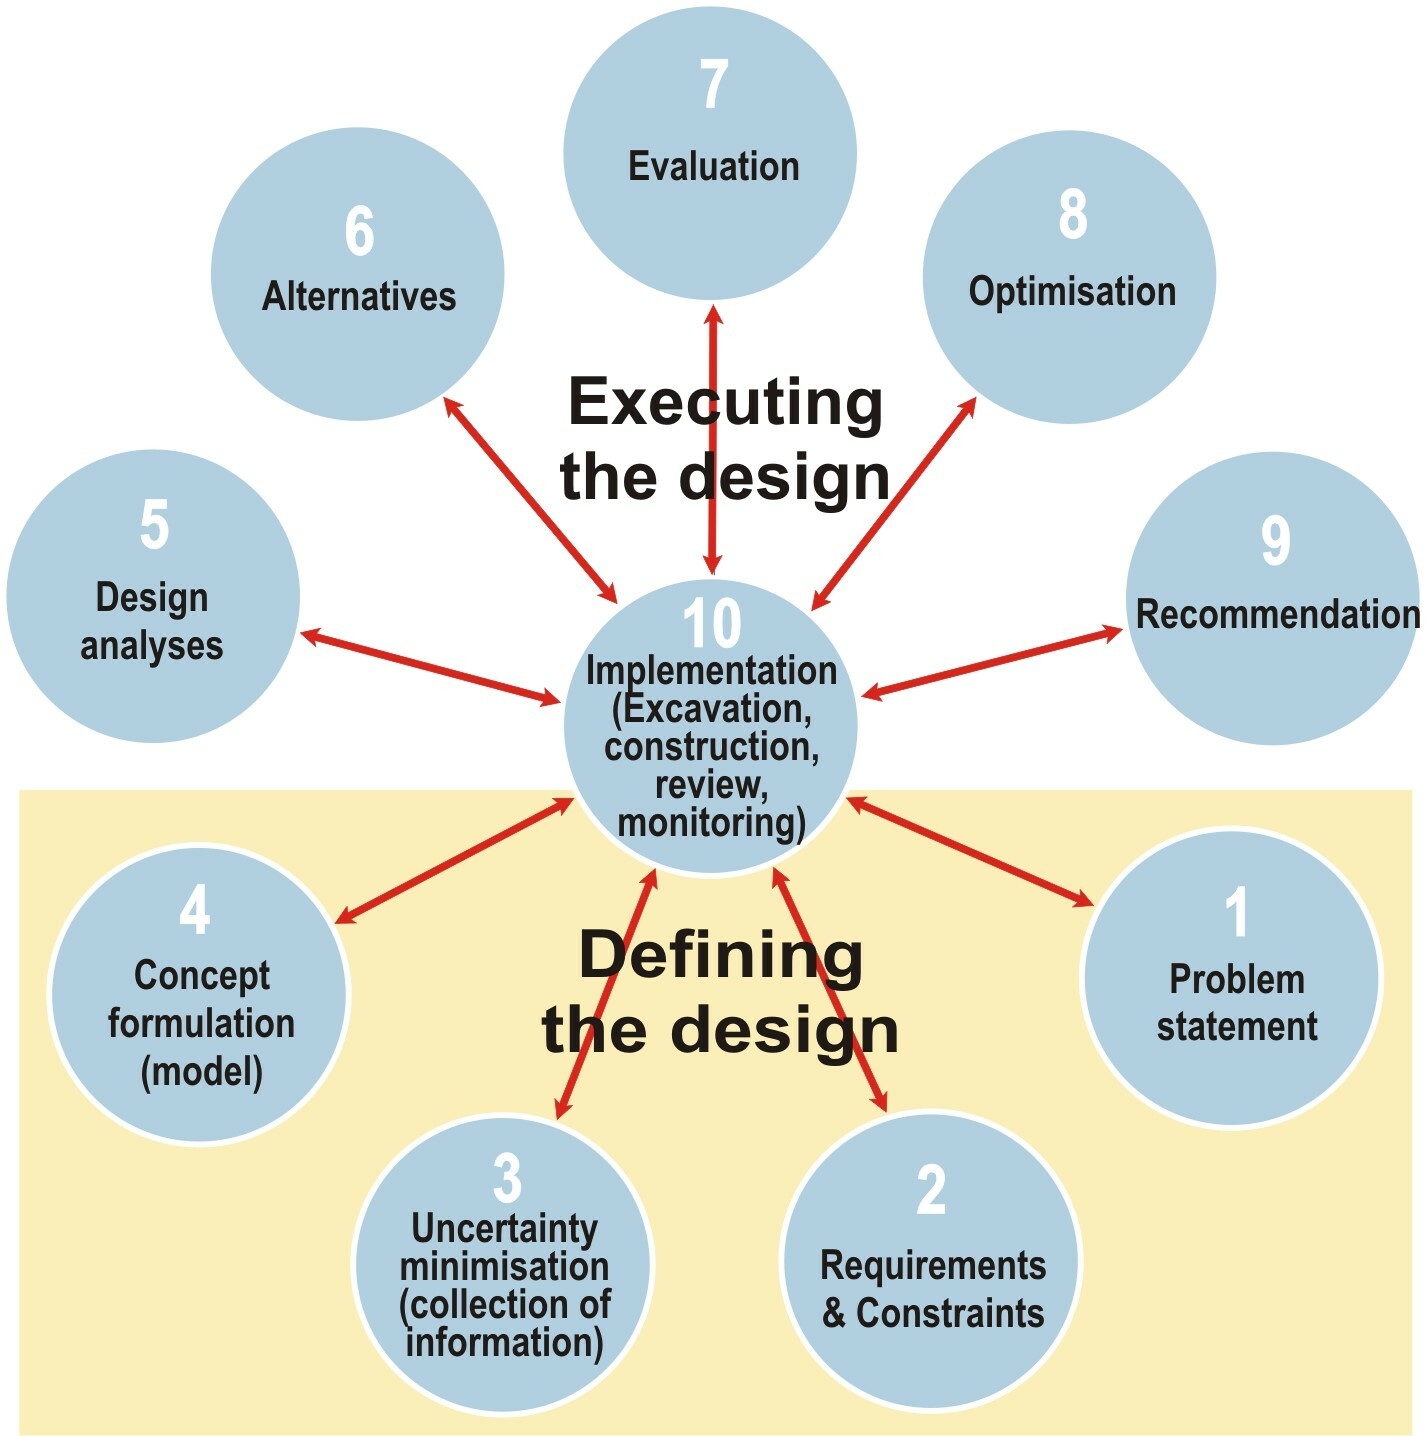 Figure 1. Engineering wheel of design (Stacey, 2009)